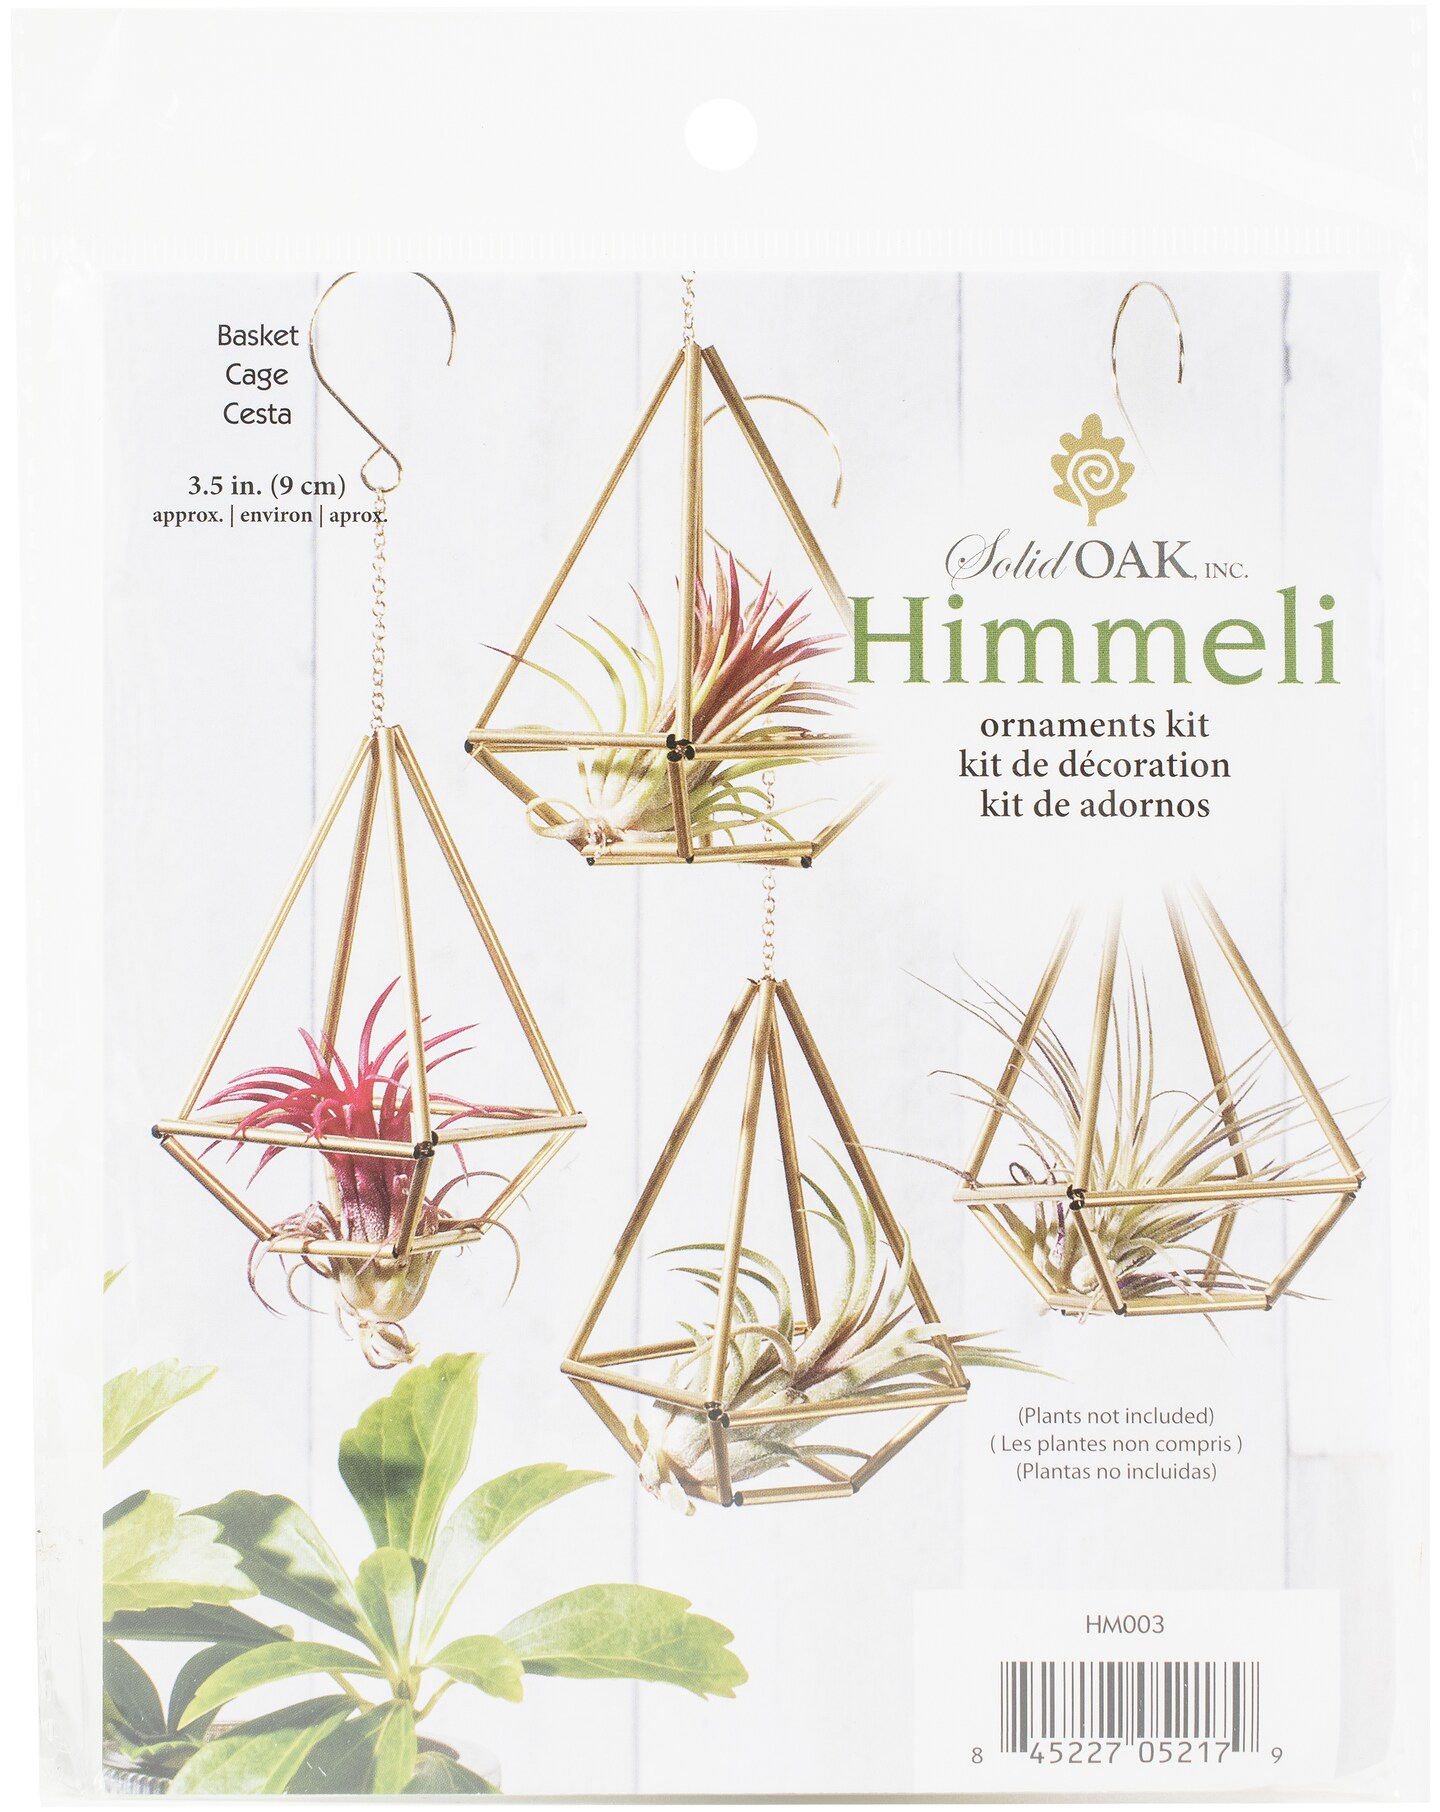 Solid Oak Himmeli Ornaments Kit-Basket